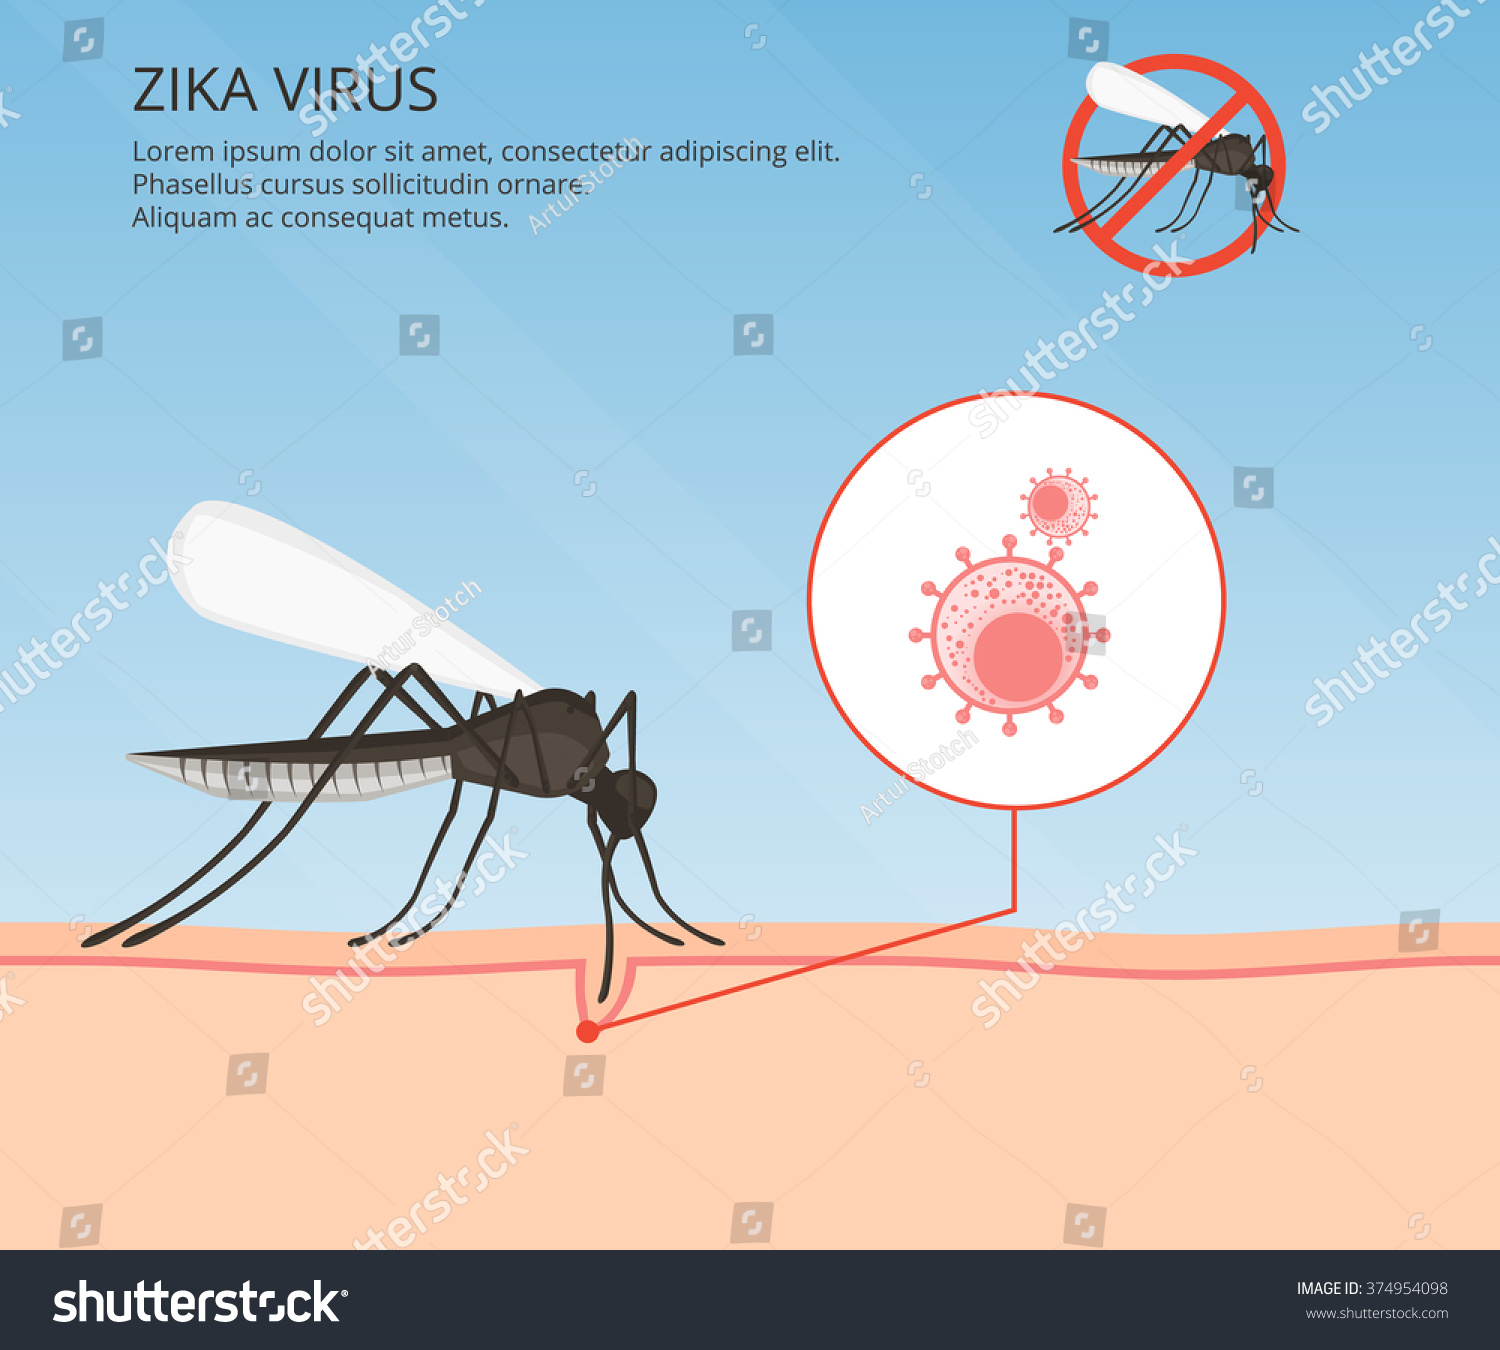 Вирус Зика комар